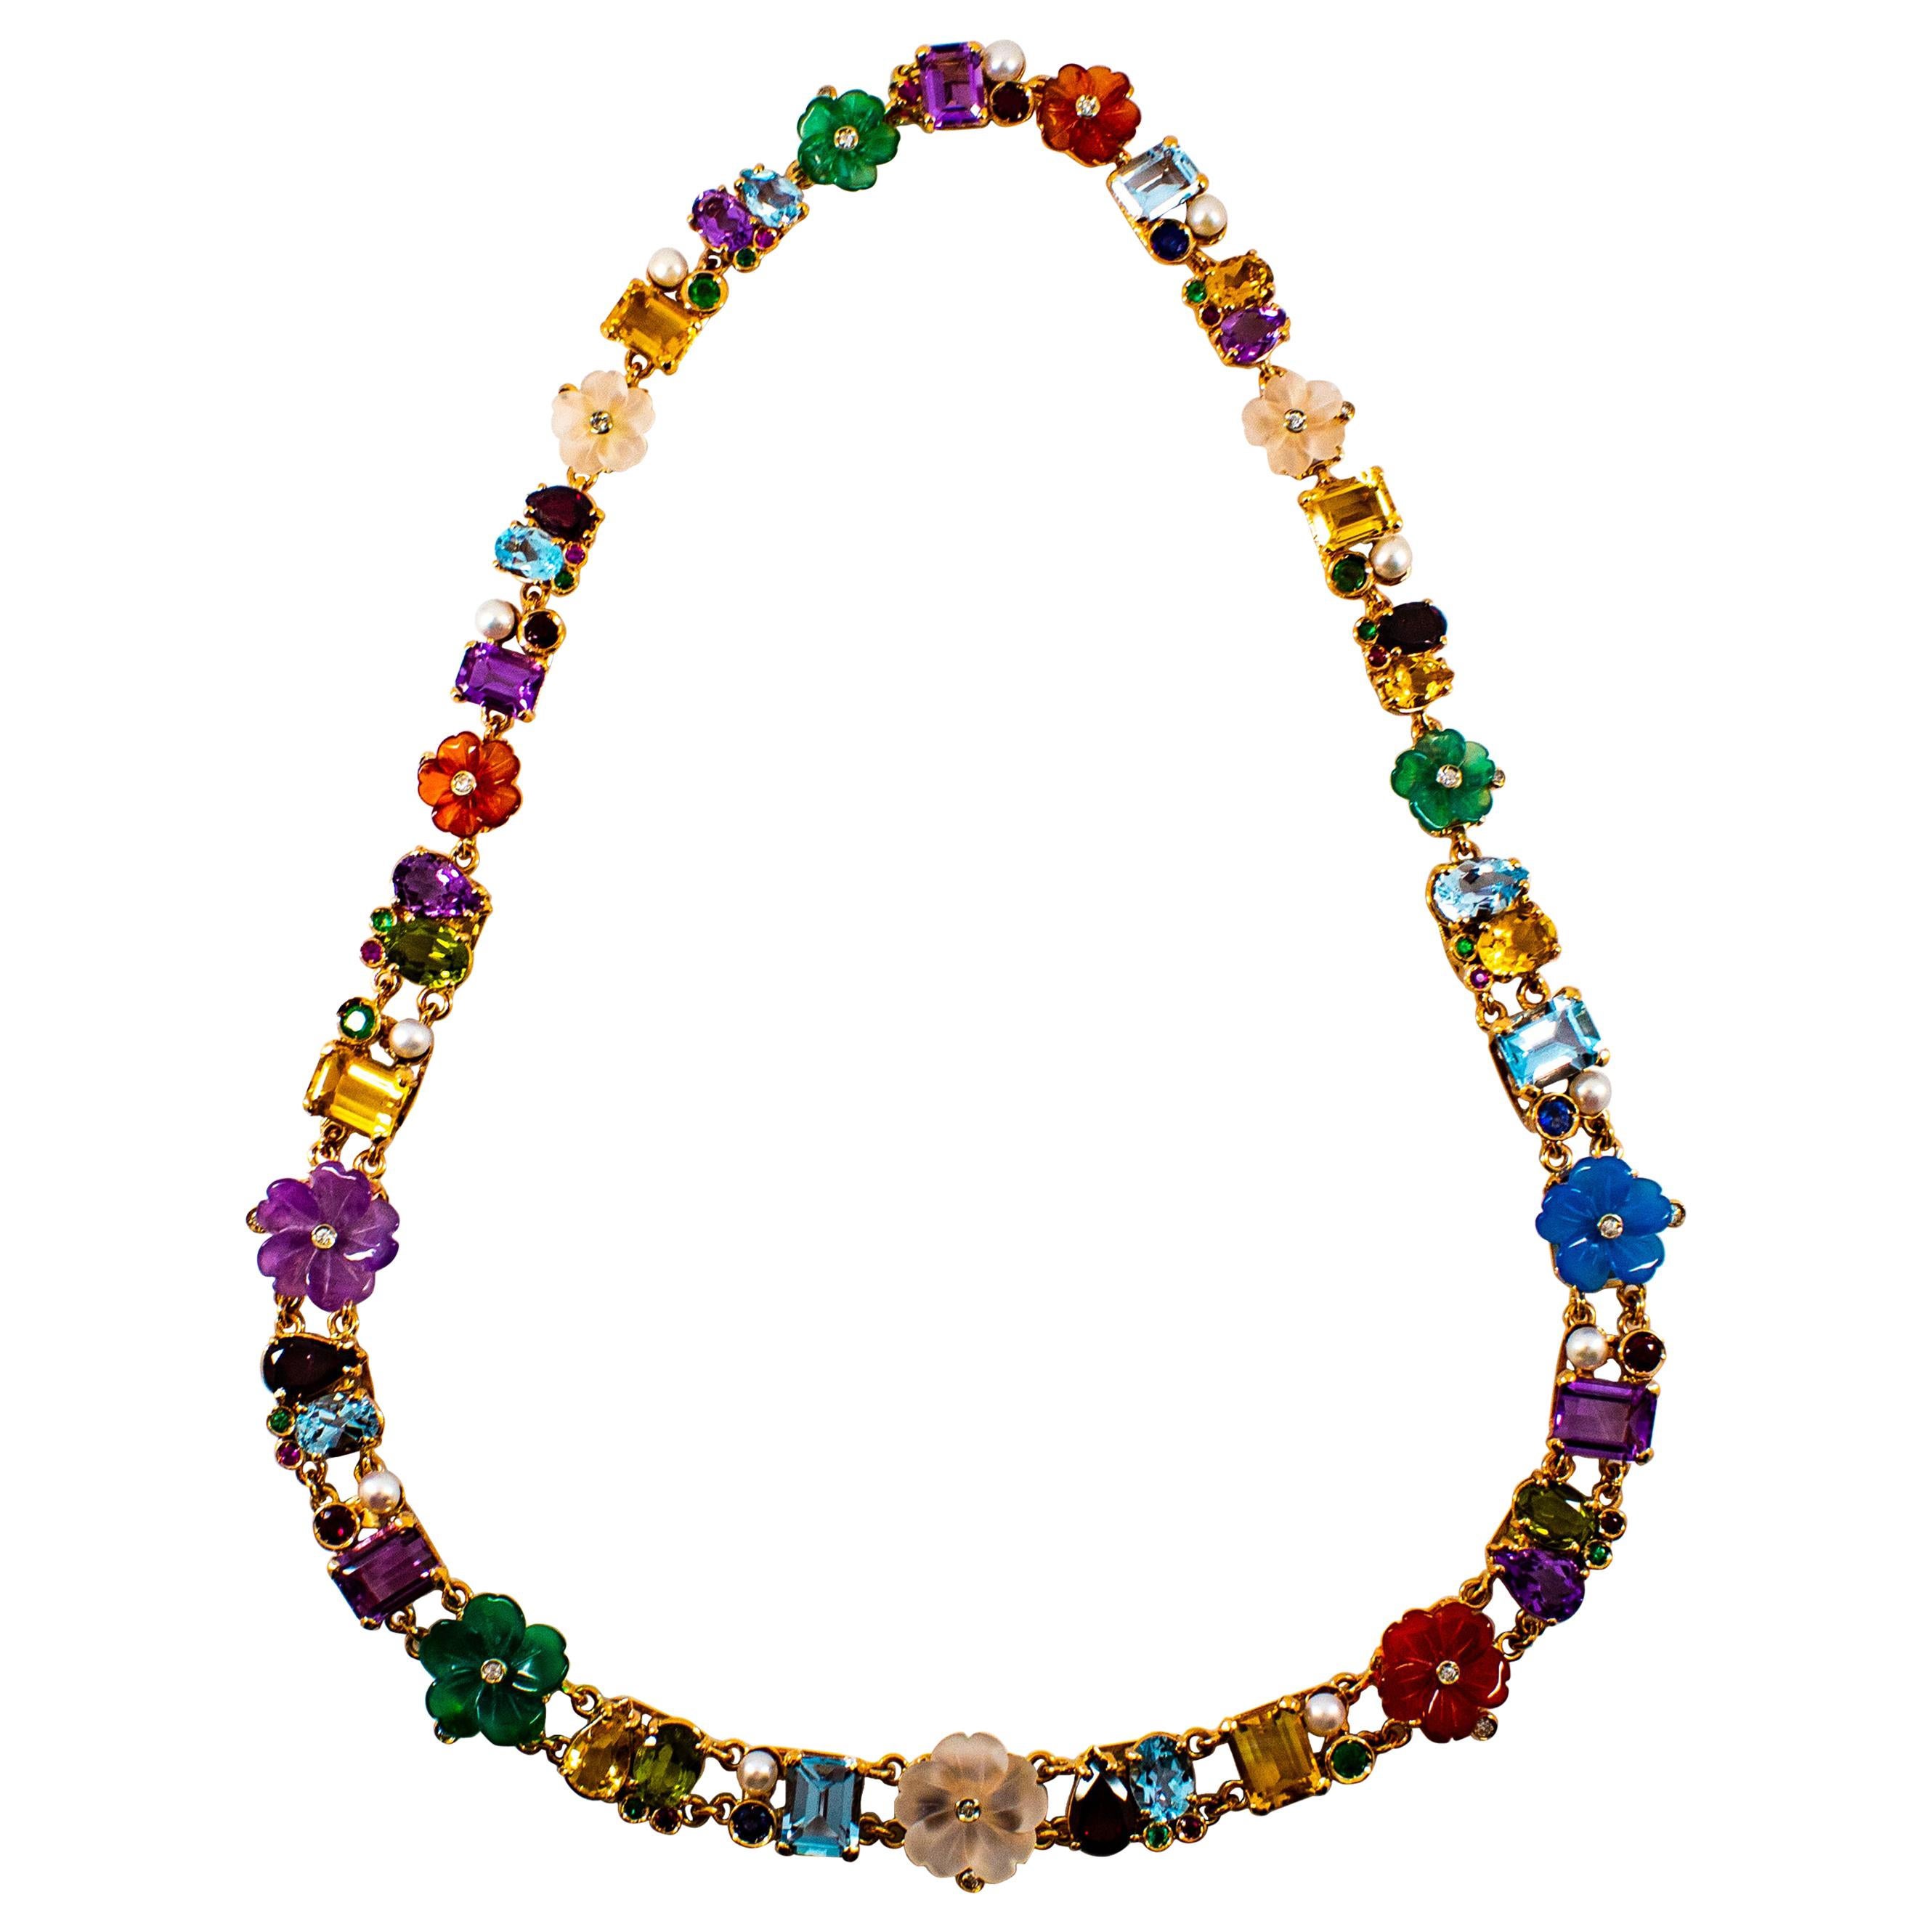 Halskette im Jugendstil mit Blumen im Jugendstil, Diamant, Rubin, Smaragd, Saphir, Gelbgold